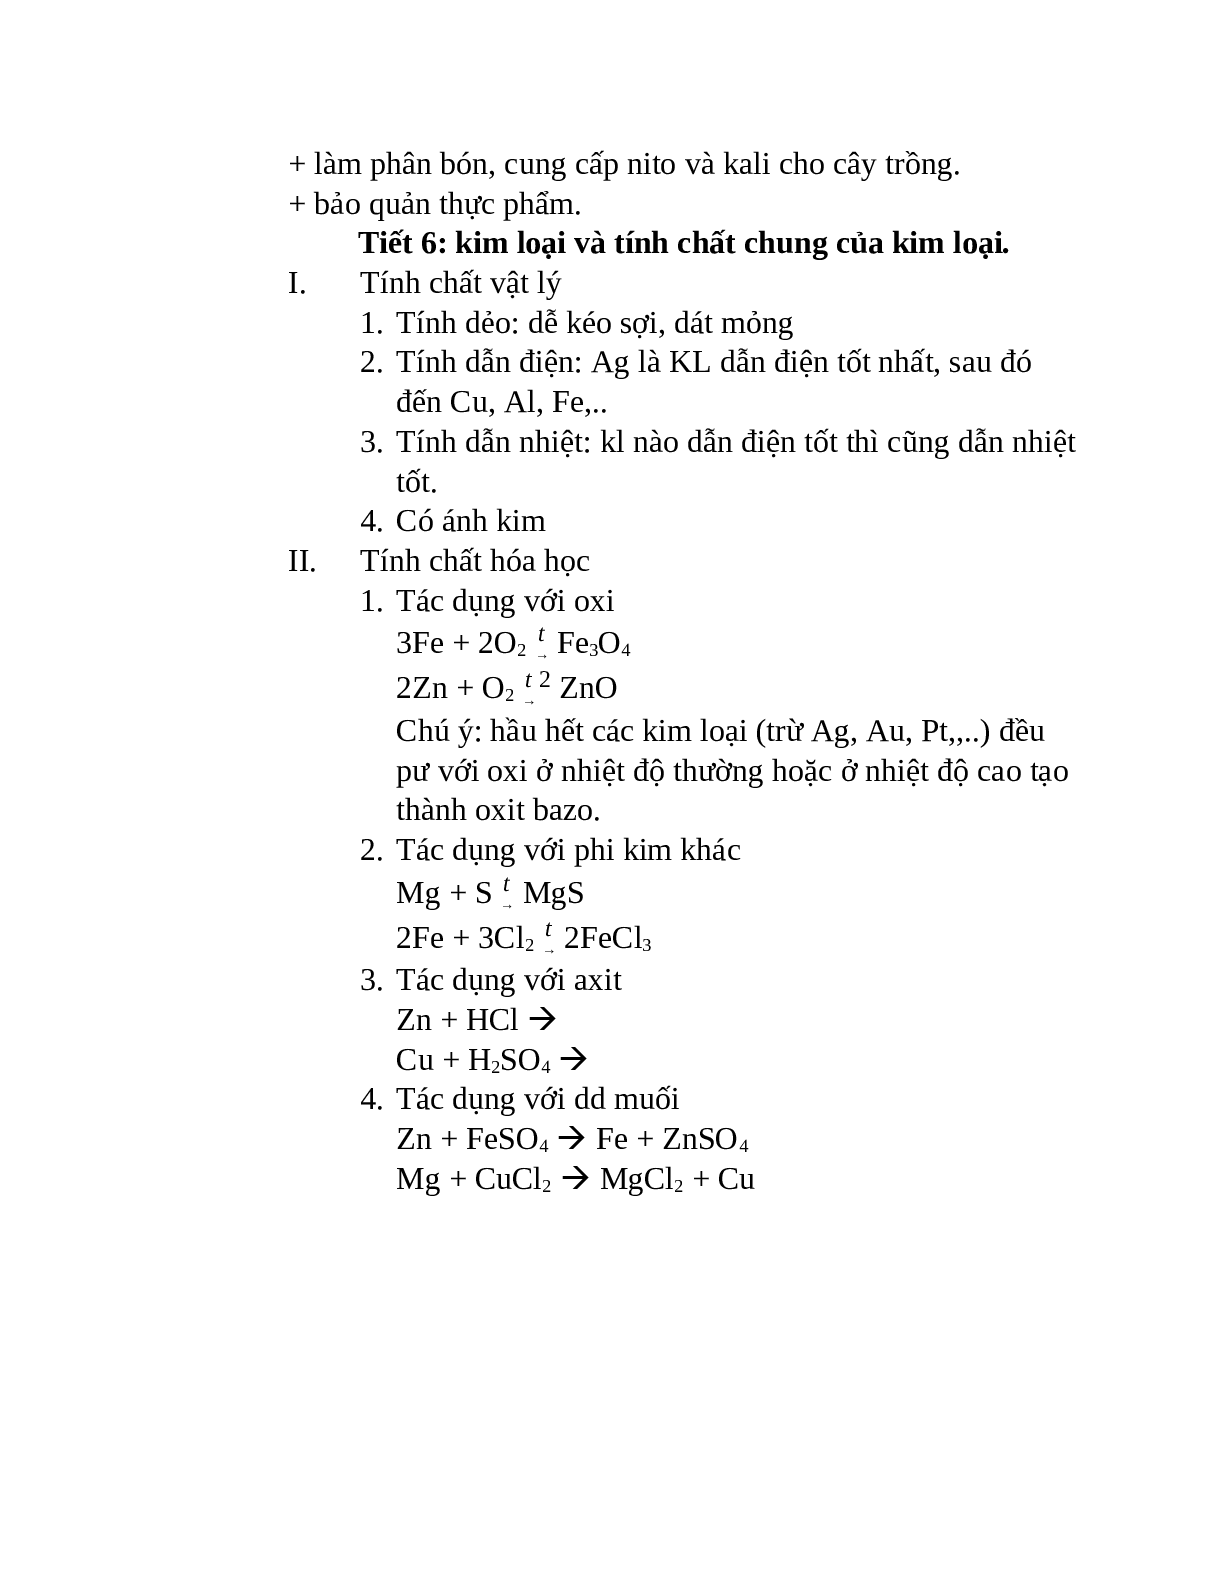 Lý thuyết, bài tập về tính chất của muối và kim loại có đáp án (trang 3)